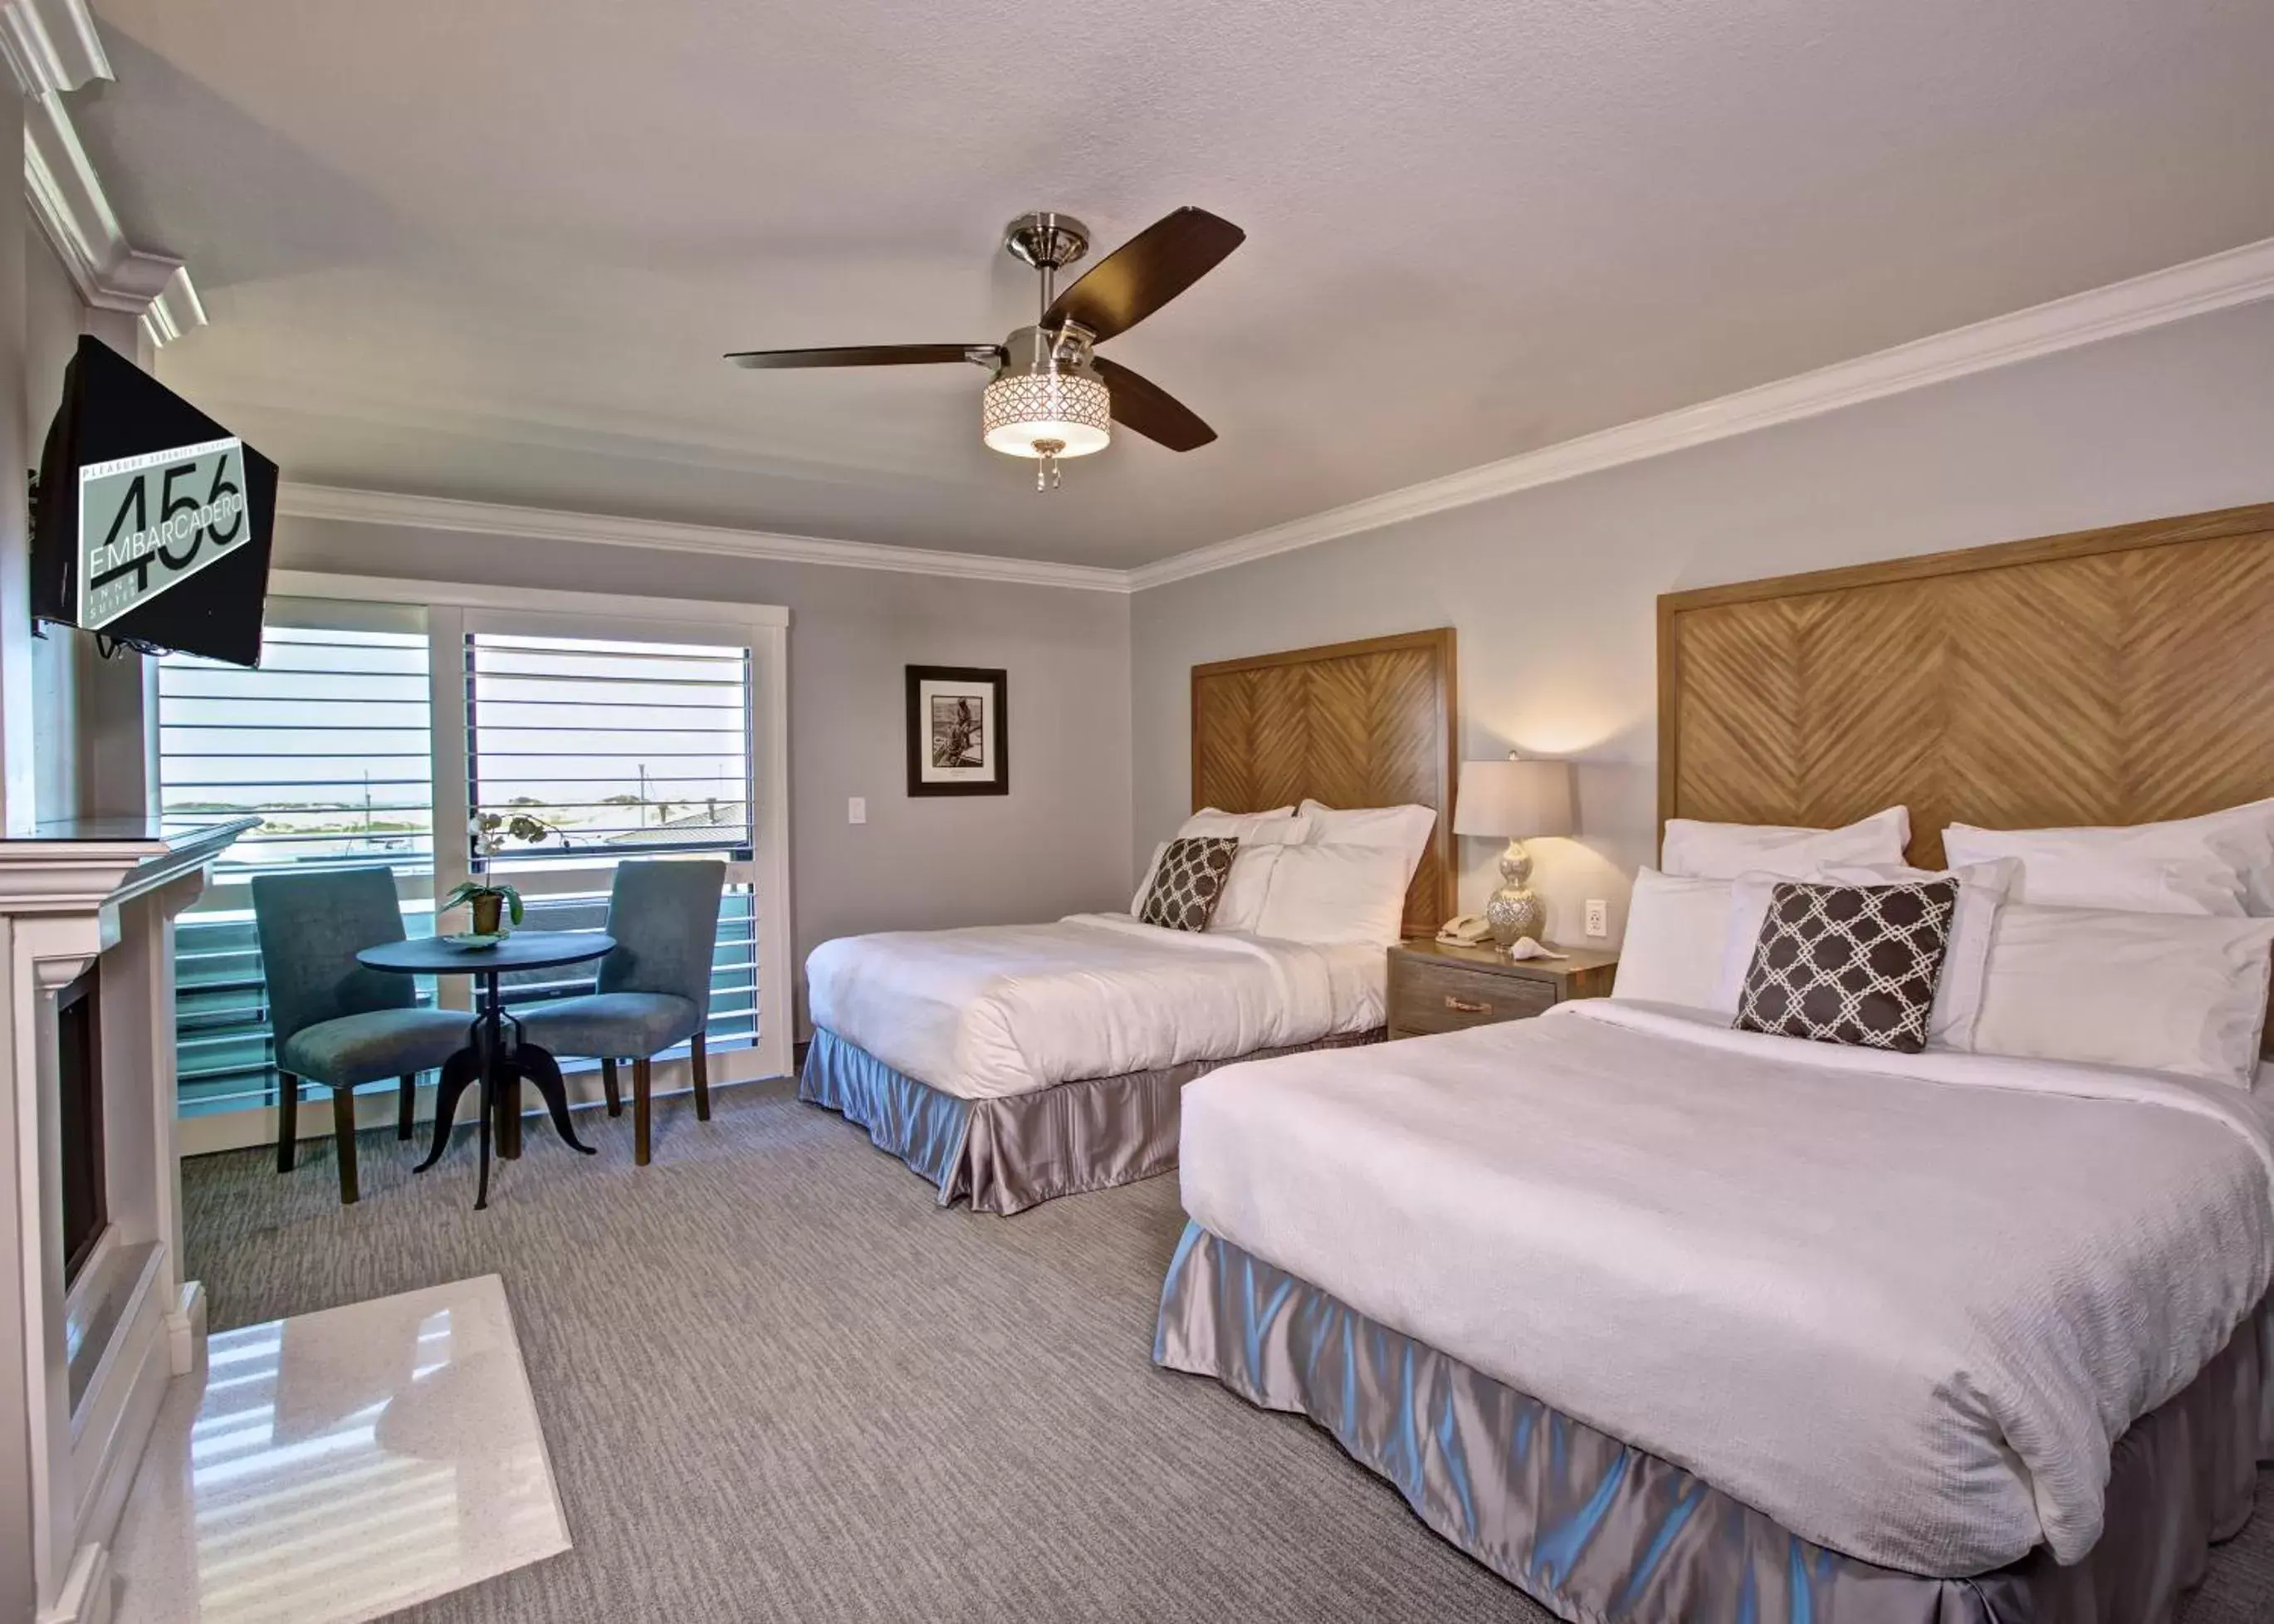 Bedroom, Room Photo in 456 Embarcadero Inn & Suites